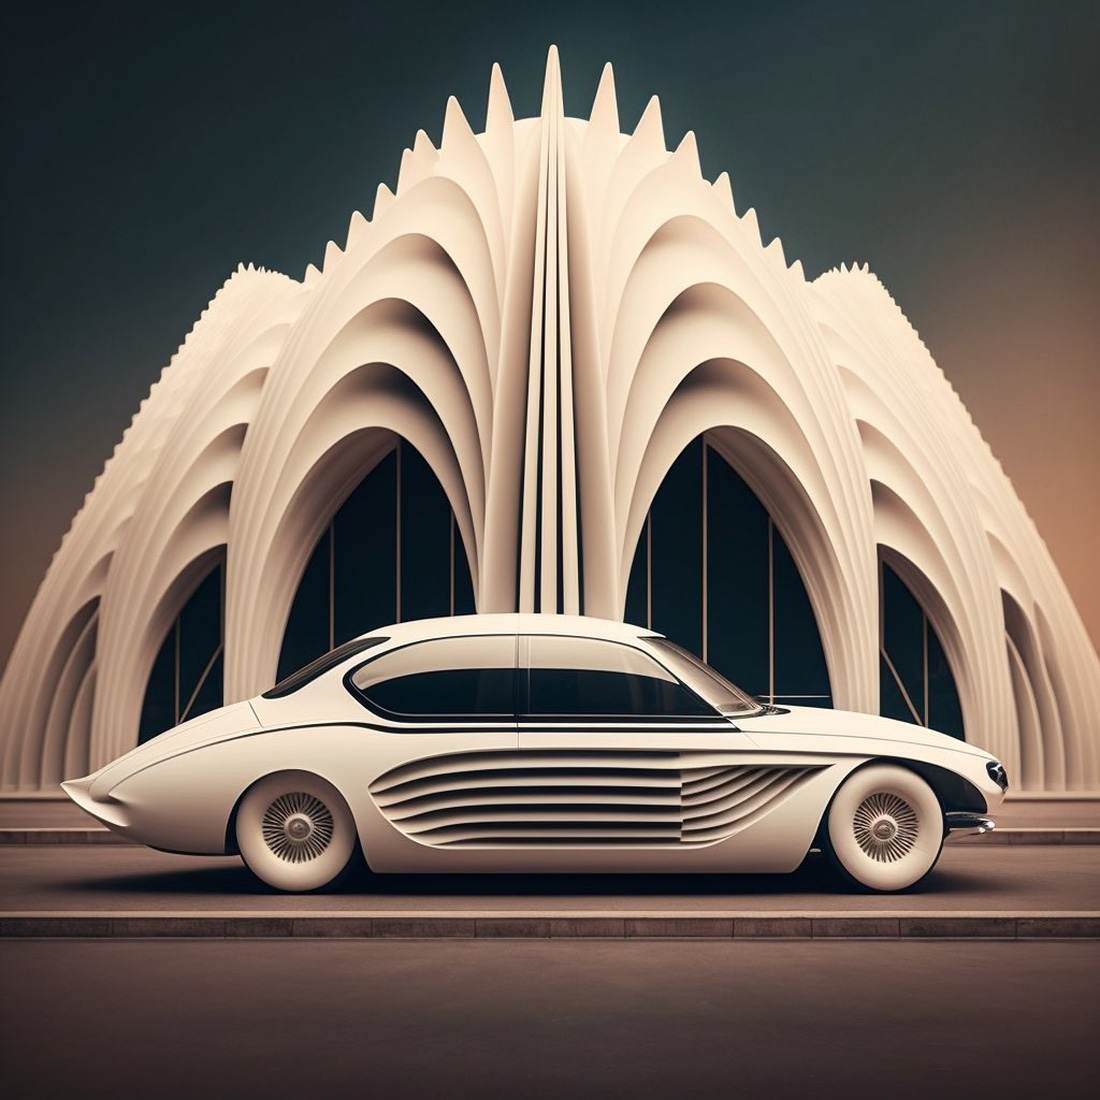 Chùm ảnh trí tuệ nhân tạo thiết kế ô tô mô phỏng các công trình kiến trúc độc đáo - Ảnh 5.